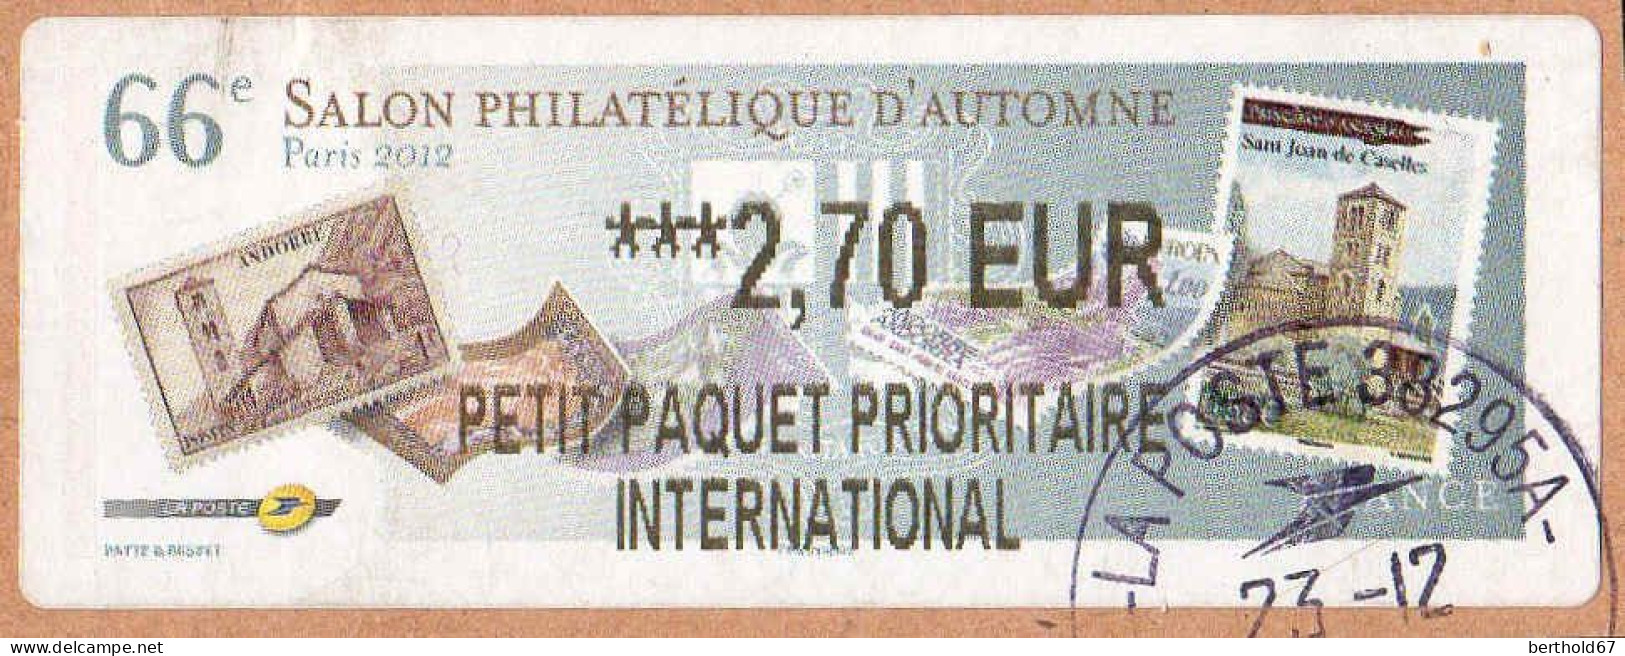 France Lisa Obl 2001 Salon Philatélique D'Automne (TB Cachet Rond) ***2,70 EUR Sur Fragment - 2010-... Abgebildete Automatenmarke